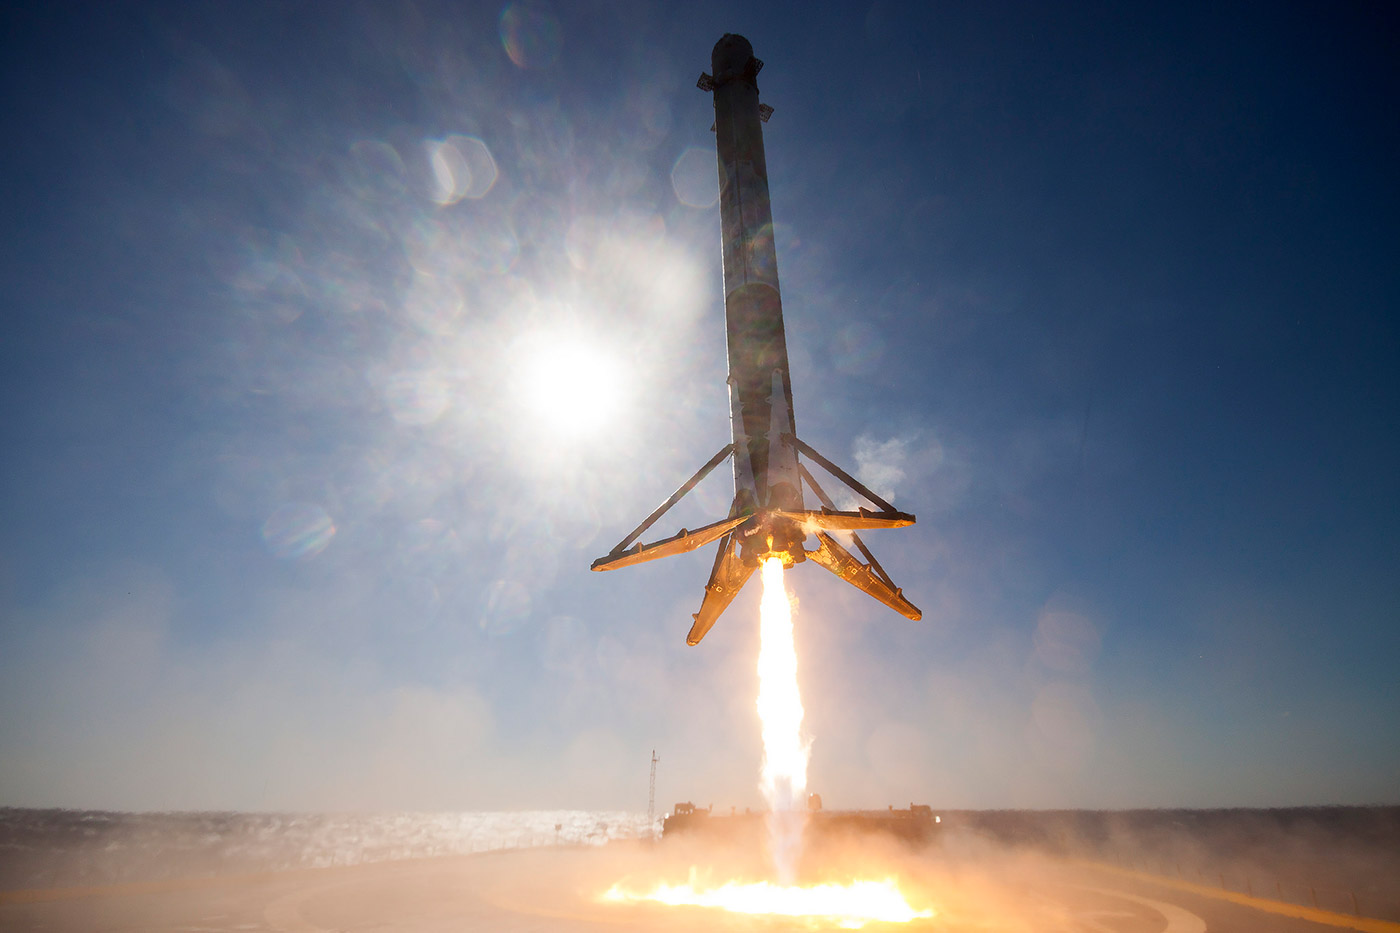 ロケット着地の瞬間を、至近距離で「体感」する。SpaceXが公開したVR動画がこれだ